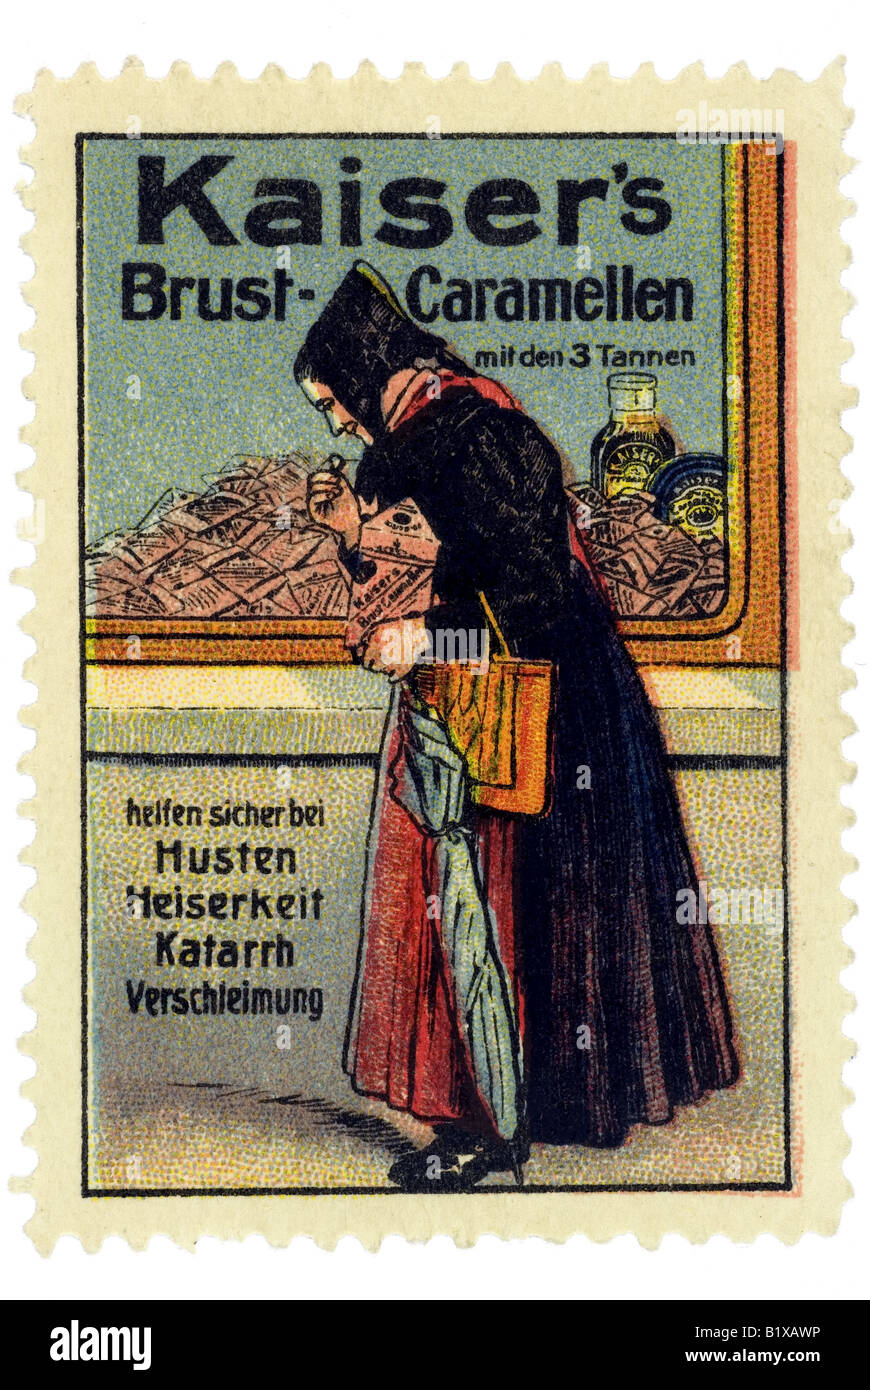 Trading stamp sweets Kaiser s Caramellen Brust mit den 3 Tannen helfen sicher bei C. Husten Heiserkeit Katarrh Verschleimung Banque D'Images